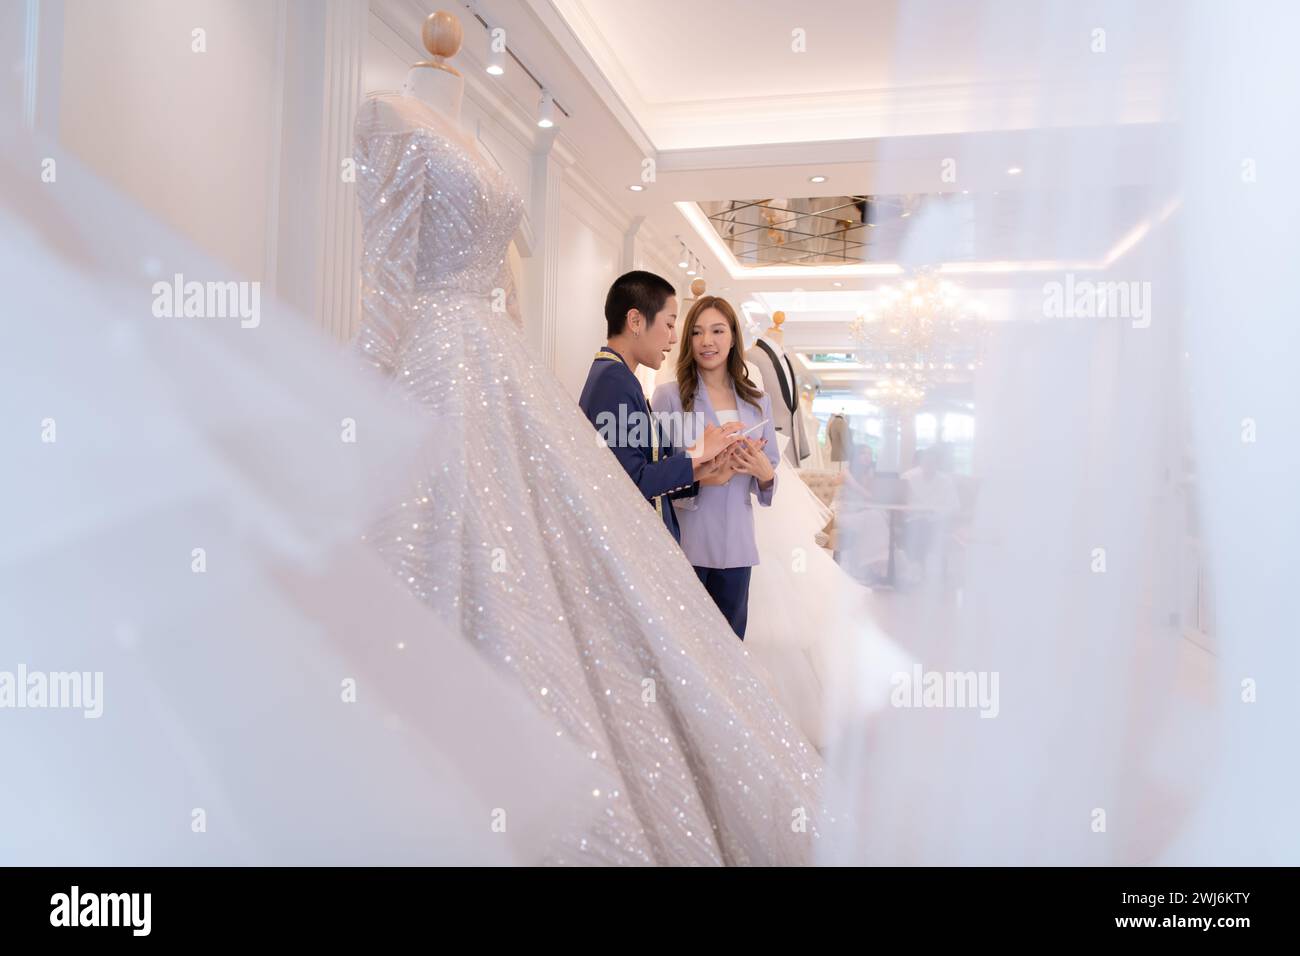 Beide asiatischen Modedesigner arbeiten im Hochzeitskleiderladen mit Hochzeitskleidern Stockfoto